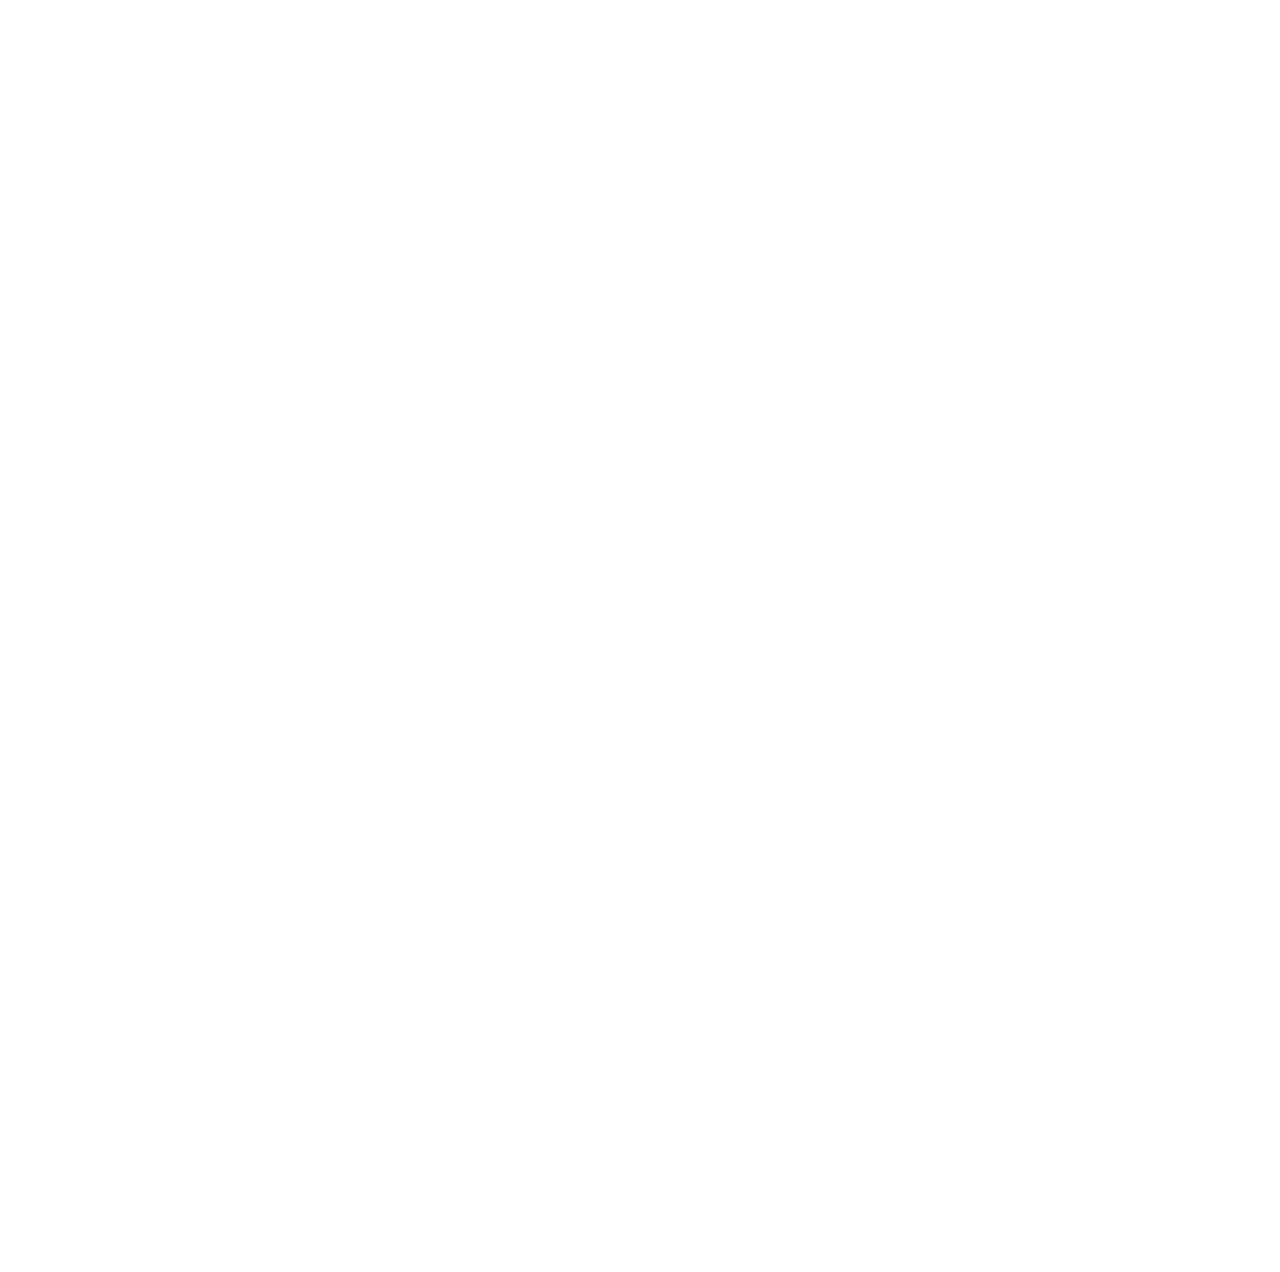 Diamond Award 2021